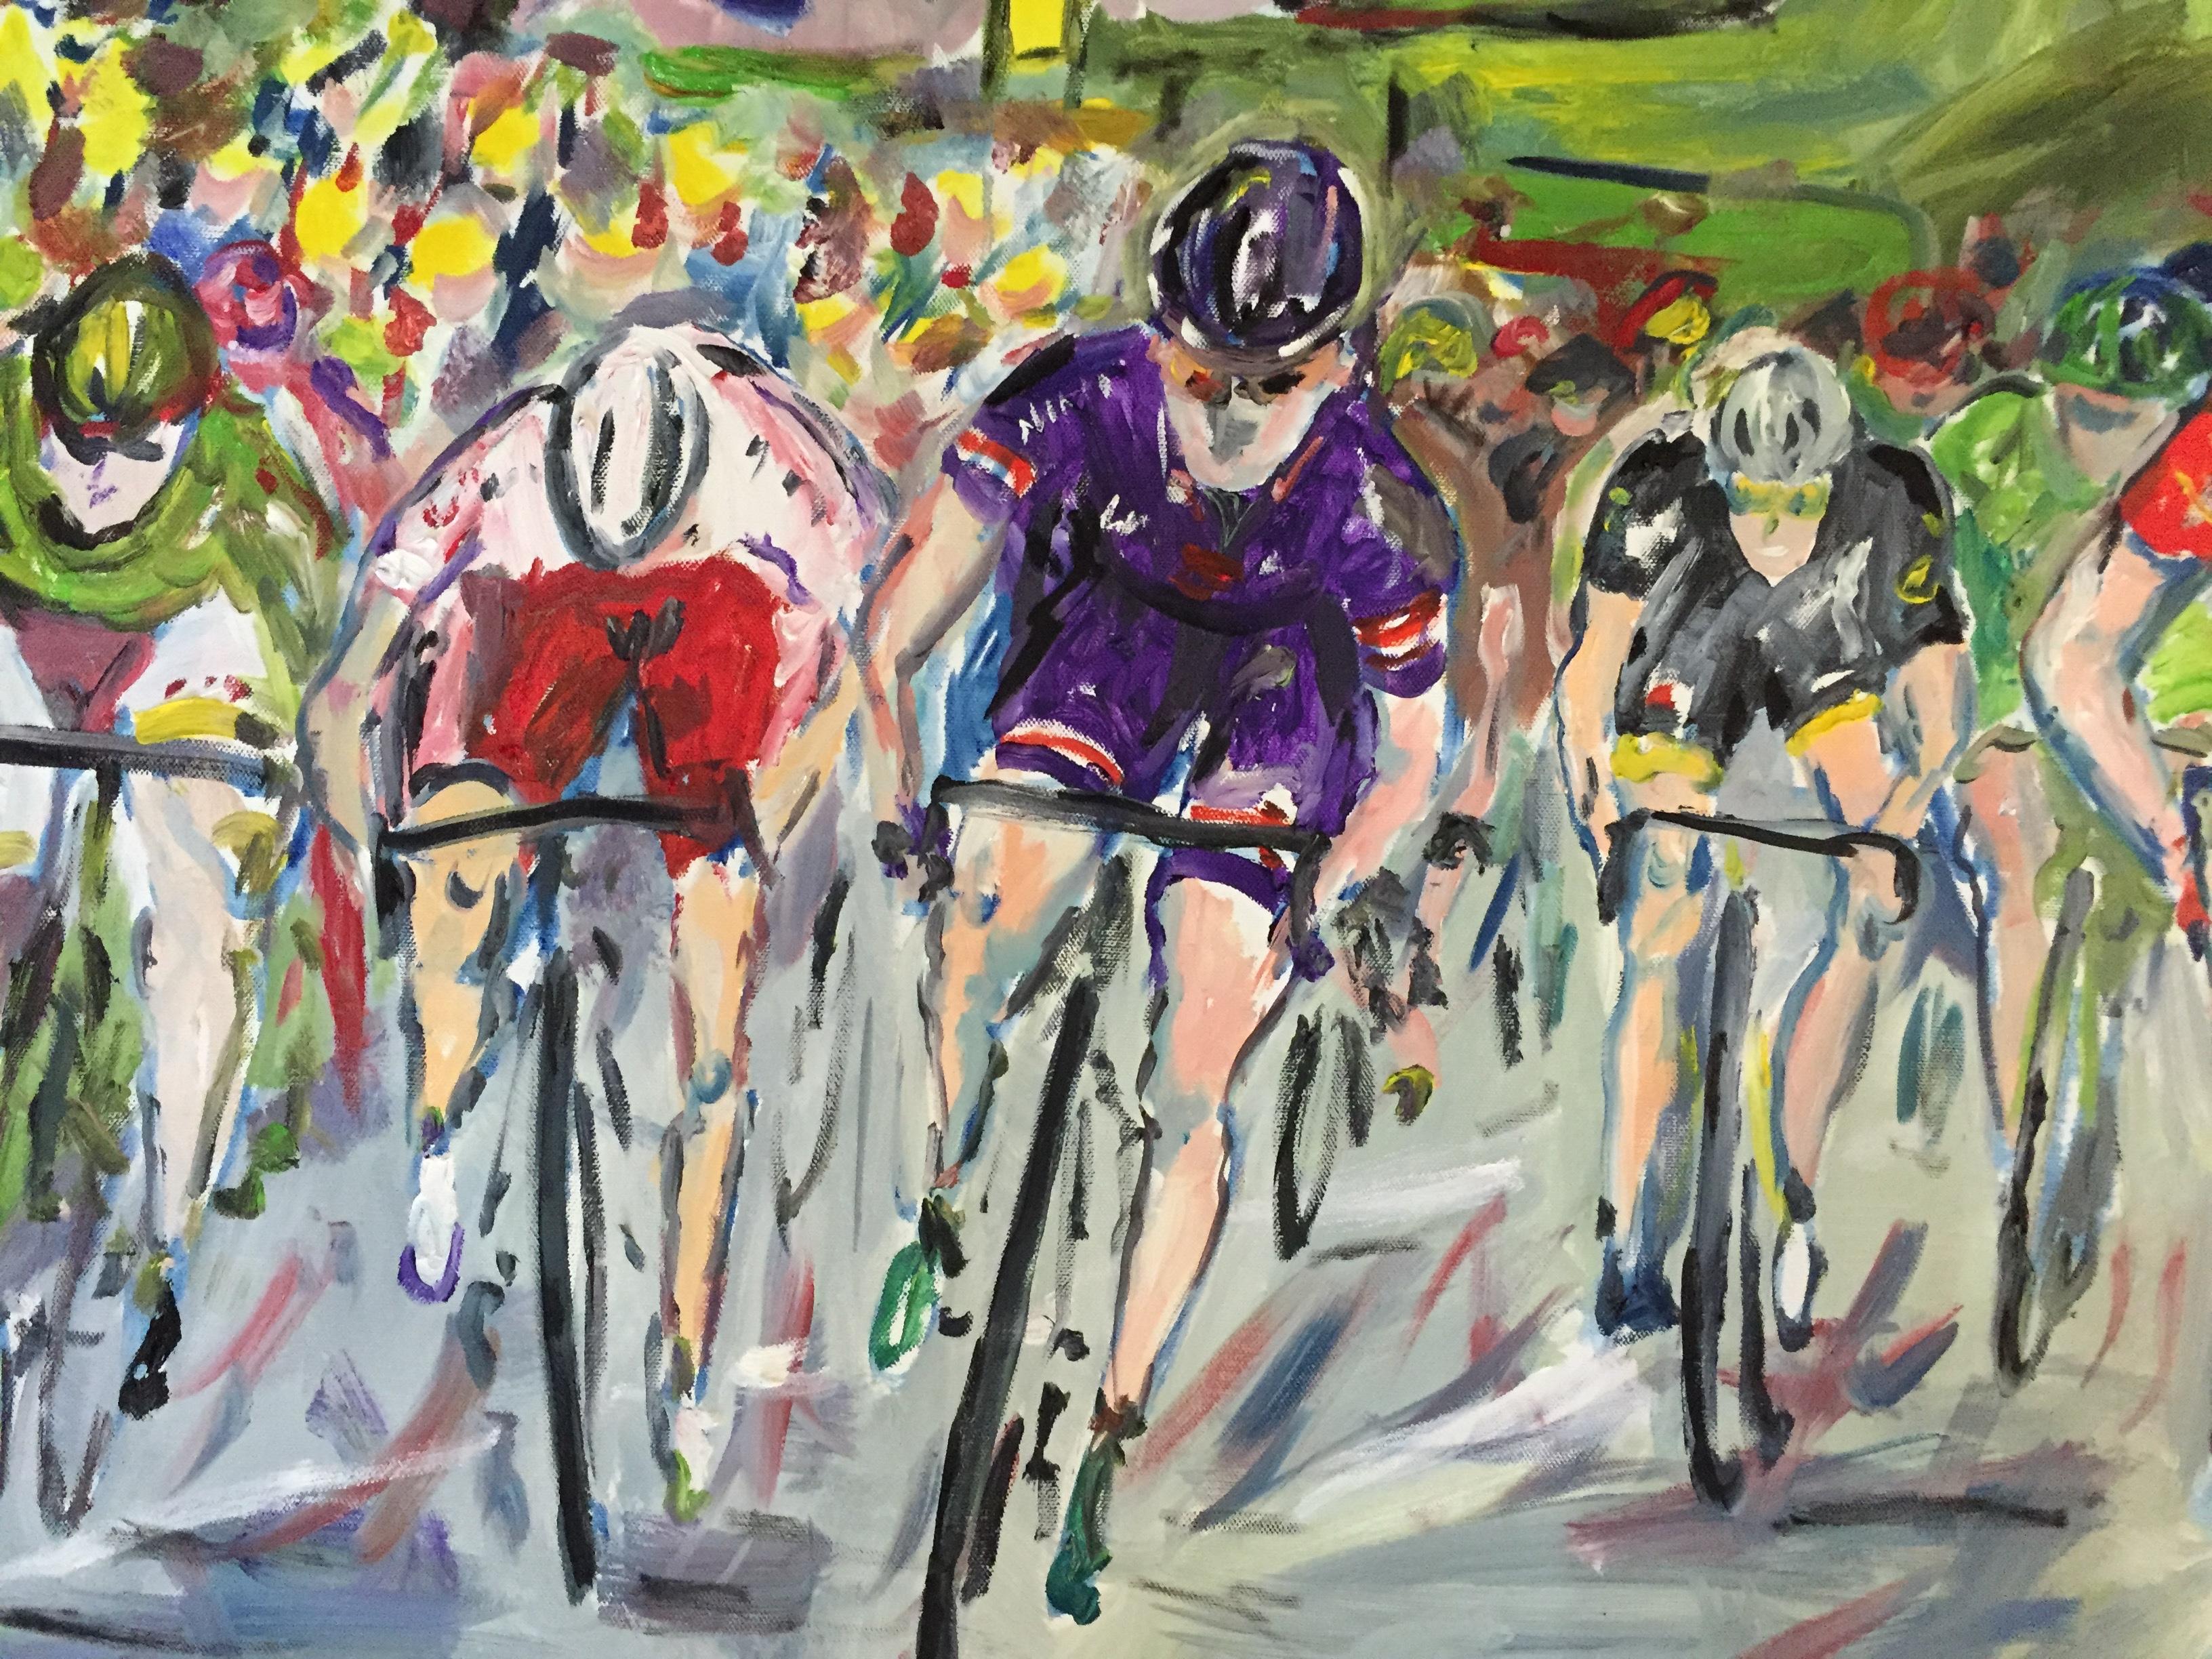 The Final Sprint - Tour de France, étape 15 2015, art de la bicyclette, art abordable - Contemporain Painting par Gareth Bayley